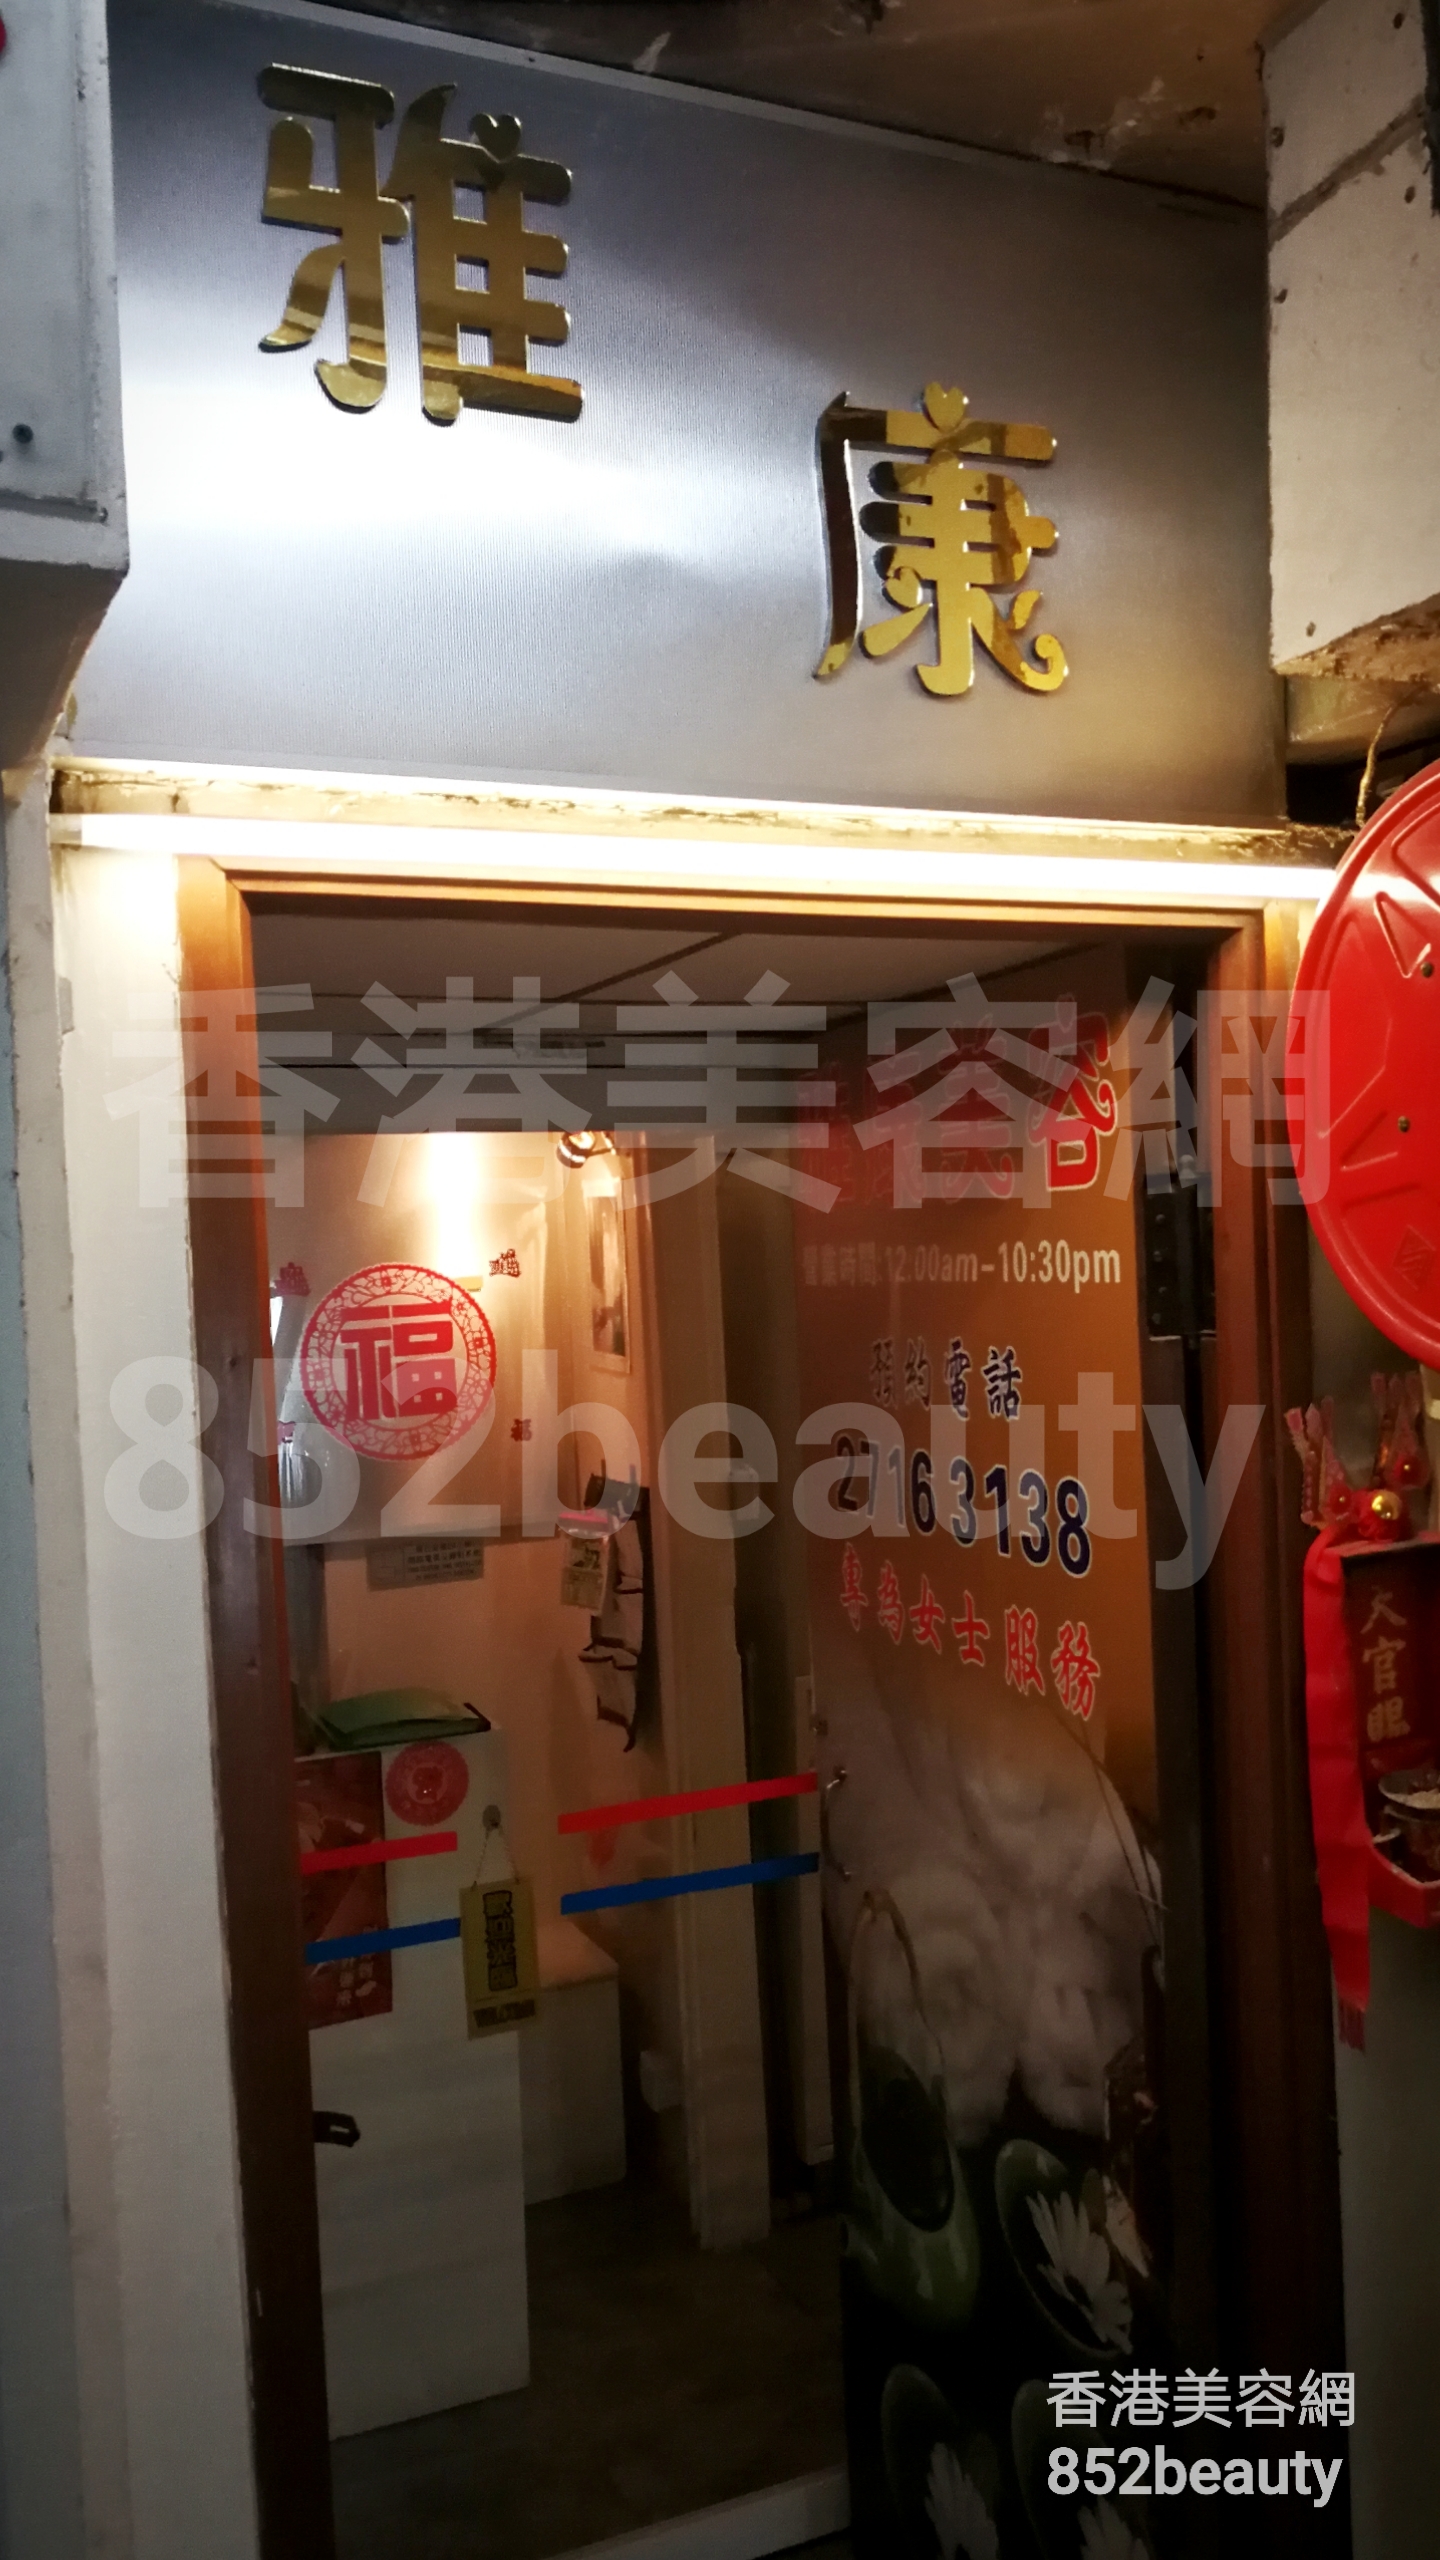 Hong Kong Beauty Salon Beauty Salon / Beautician: 雅康美容